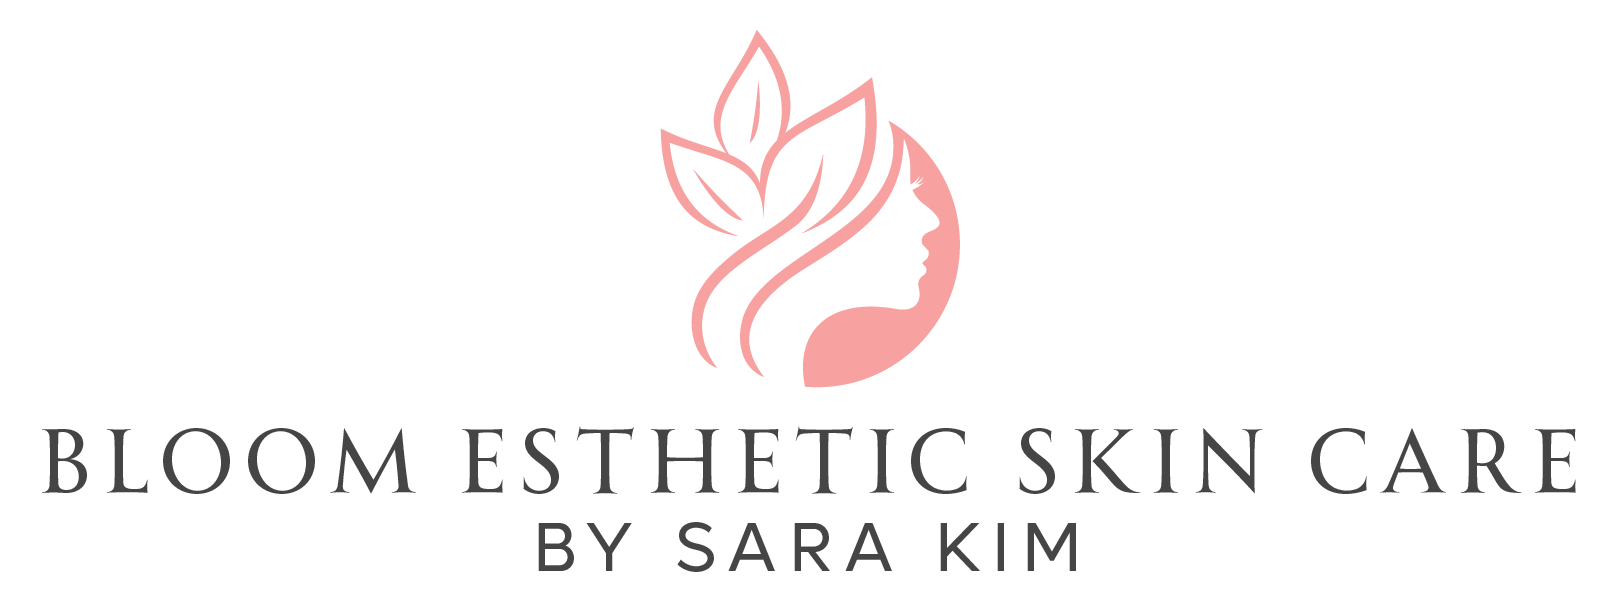 Bloom Esthetic Skin Care